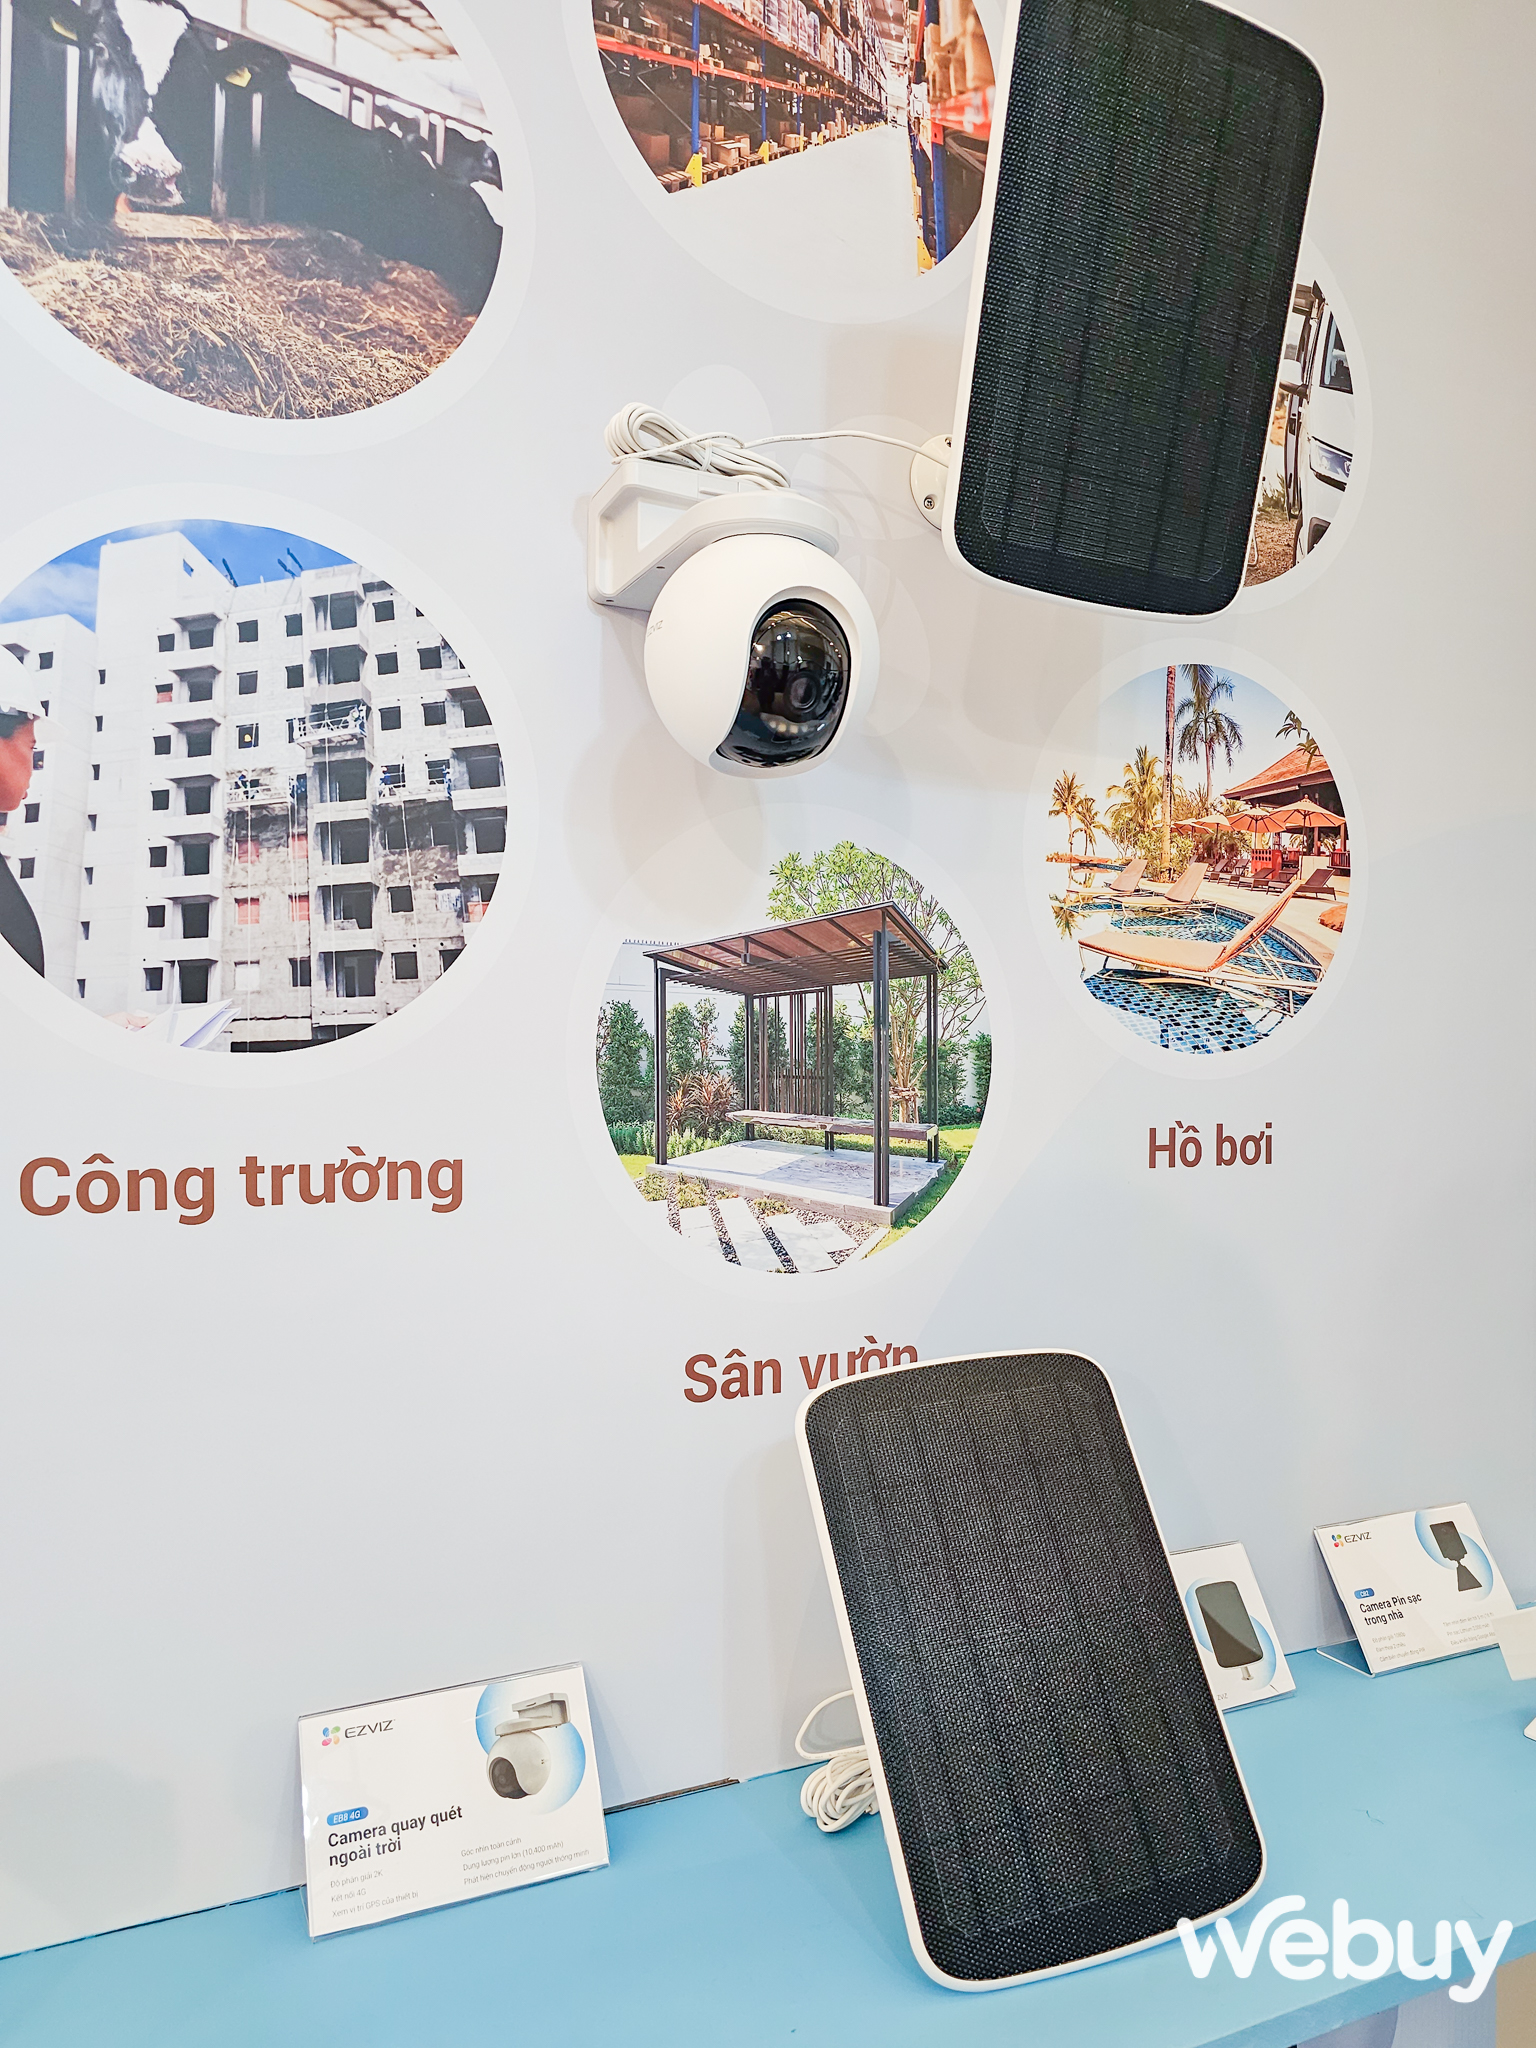 EZVIZ ra mắt loạt sản phẩm mới: Camera giám sát tích hợp 4G, Robot hút bụi tự động, cây lau nhà thông minh cùng nhiều thiết bị quản lý Smarthome khác - Ảnh 3.